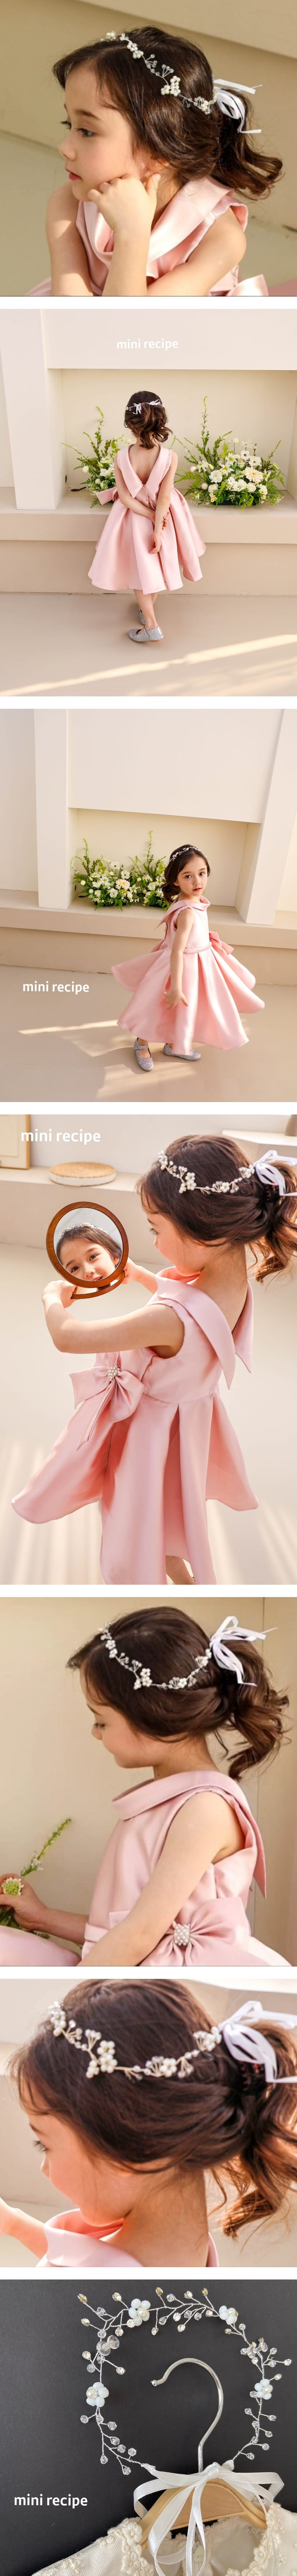 Mini Recipe - Korean Children Fashion - #littlefashionista - Blossom Tiara - 2